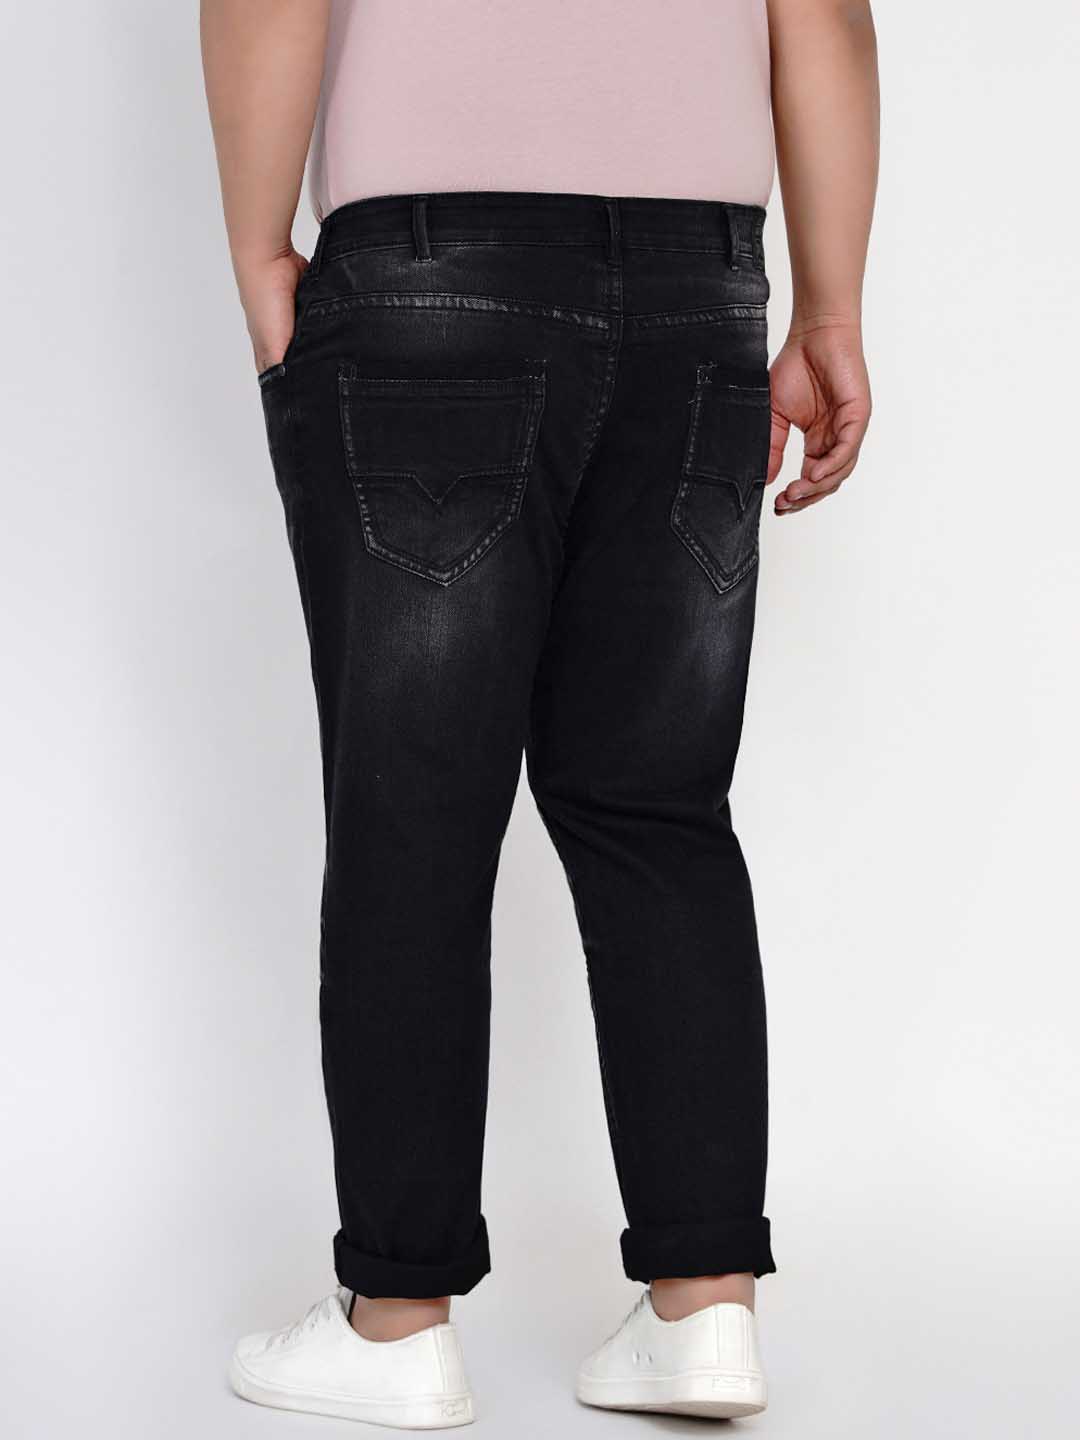 bottomwear/jeans/JPJ12129/jpj12129-4.jpg